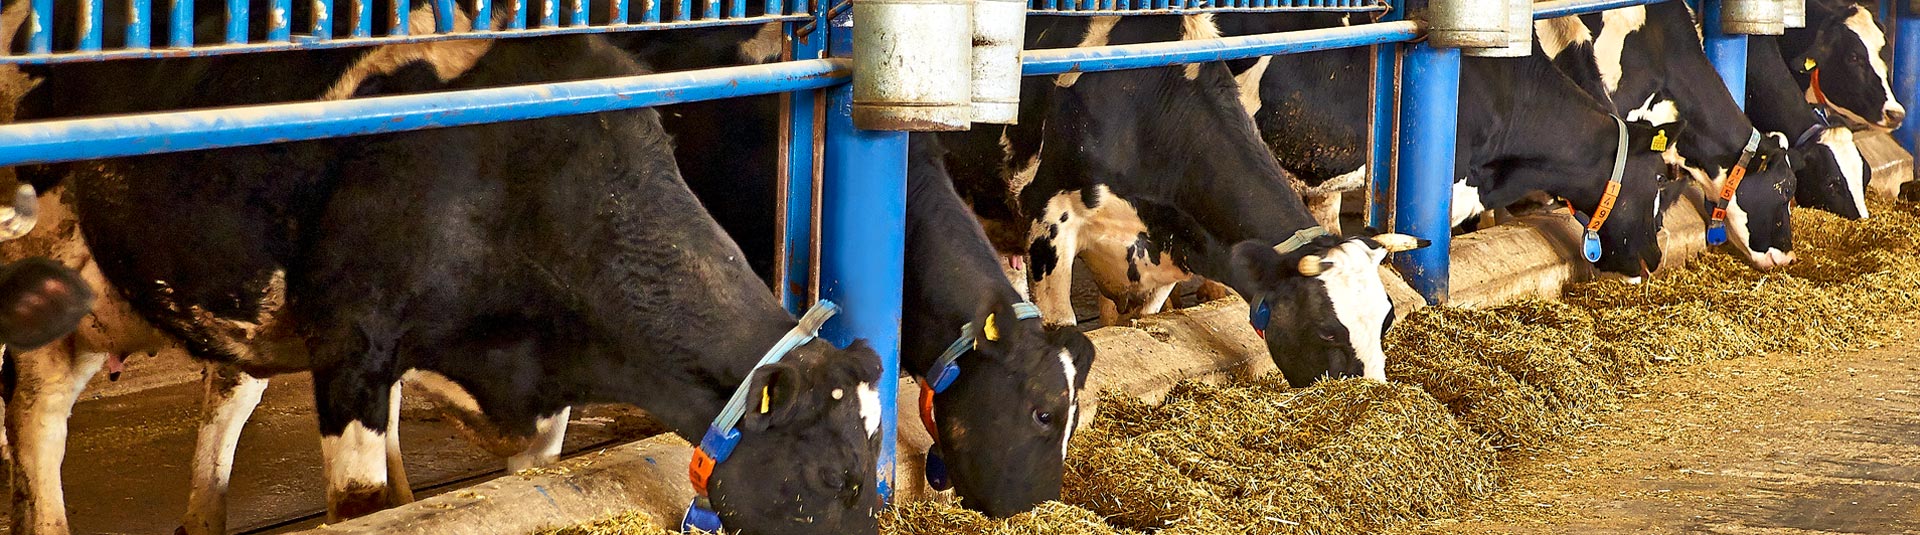 Çumra - Erentepe Süt Üretim Çiftliği